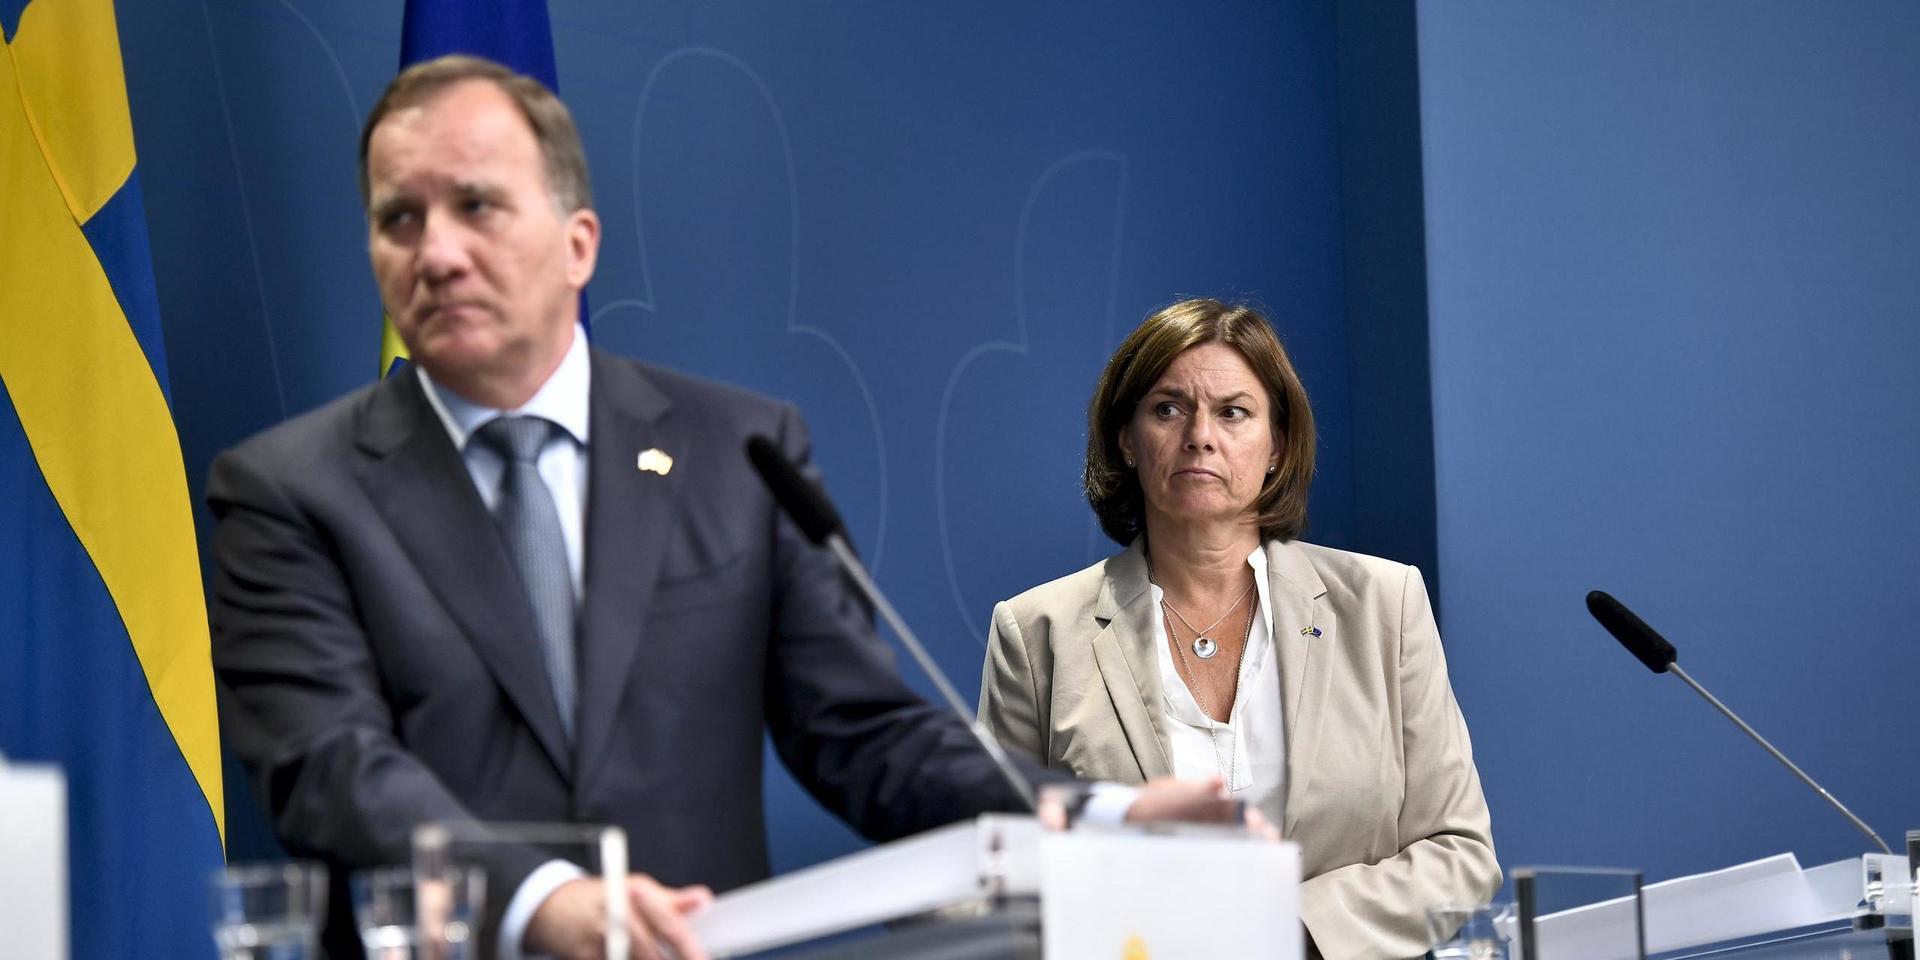 Regeringskris. Migrationen har återigen gjort att den rödgröna regeringen med statsminister Stefan Löfven (S) och vice statsminister Isabella Lövin (MP) riskerar att spricka.
